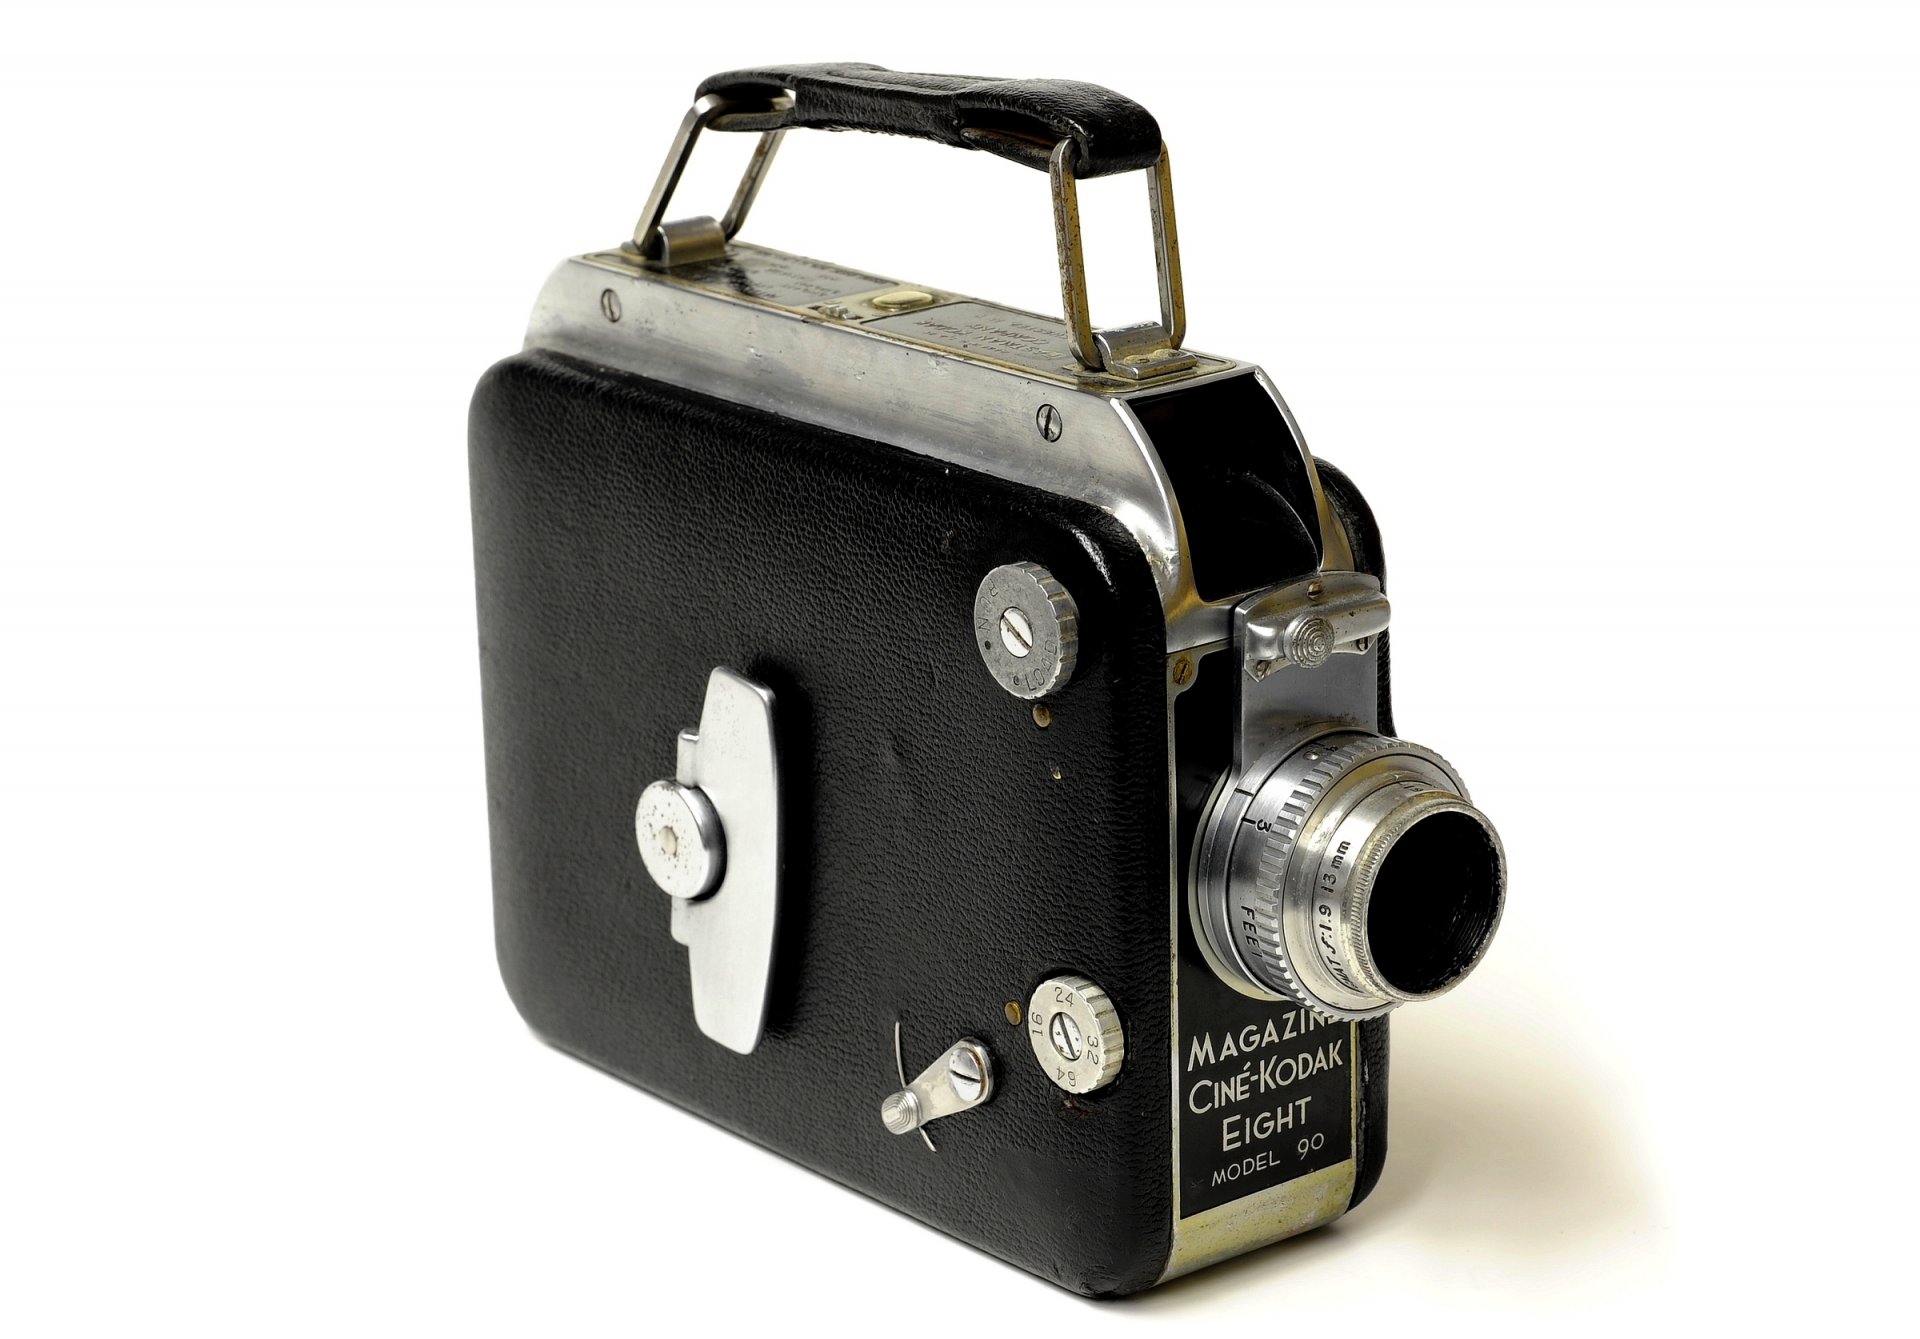 журнал сине-кодак восемь модель 90 кинокамера объектив kodak anastigmatic 13 мм f/1 серебристо-чёрный металлический корпус фон